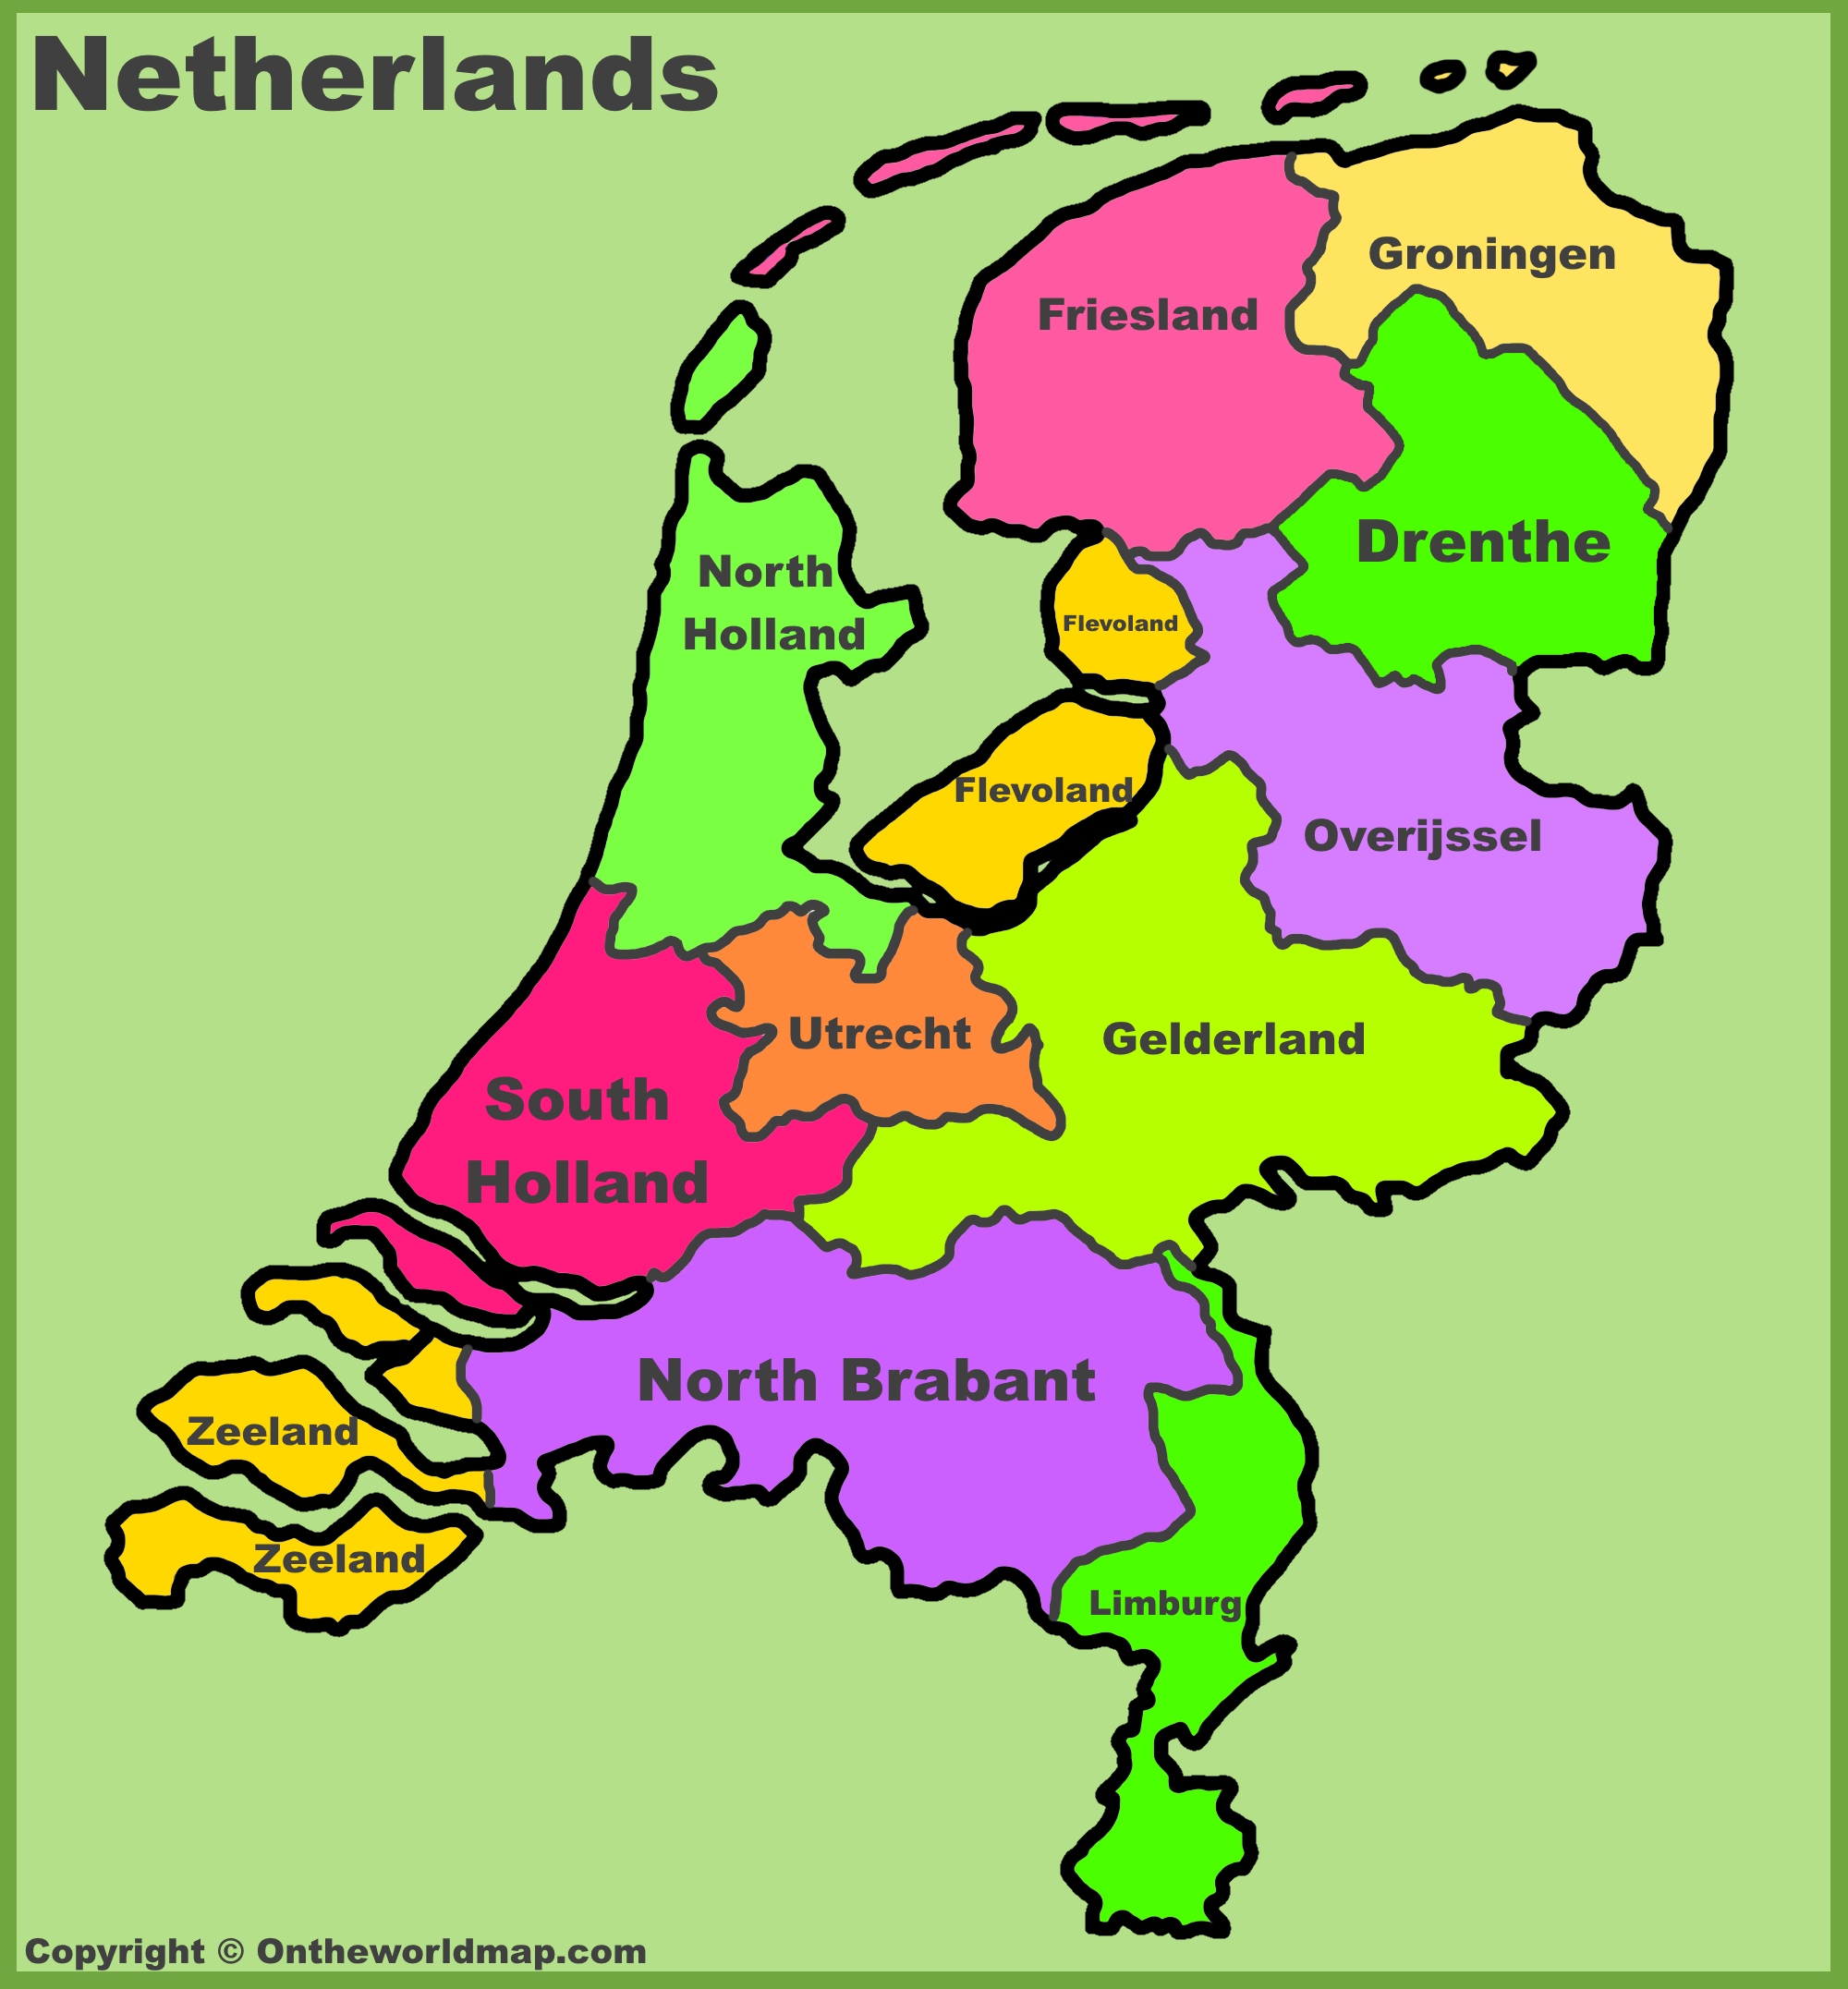 Netherlands provinces map List of Netherlands provinces